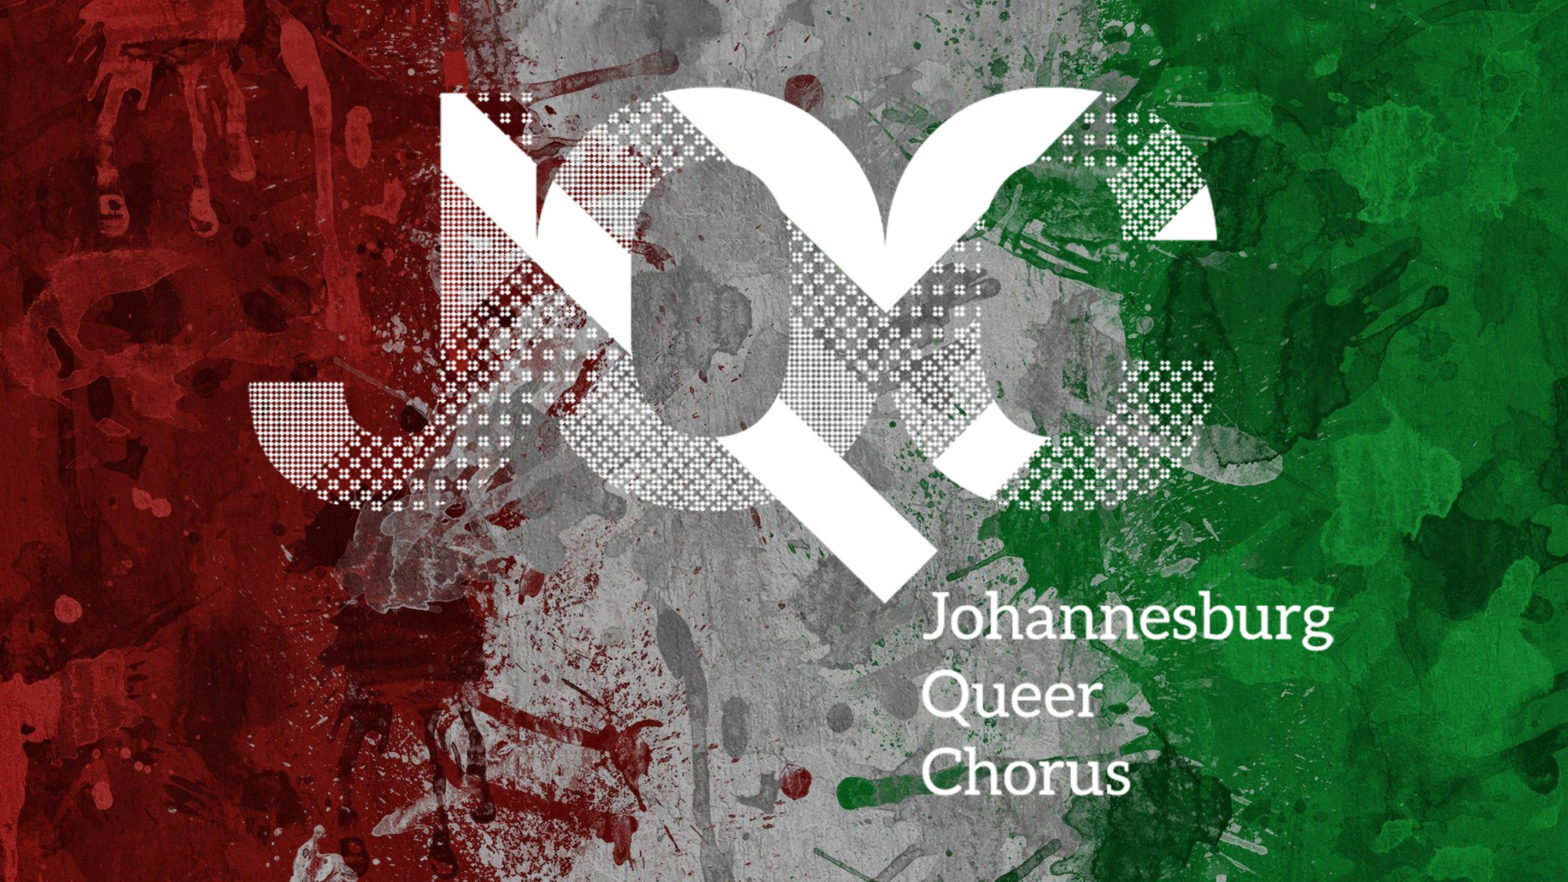 Johannesburg Queer Chorus (JQC)